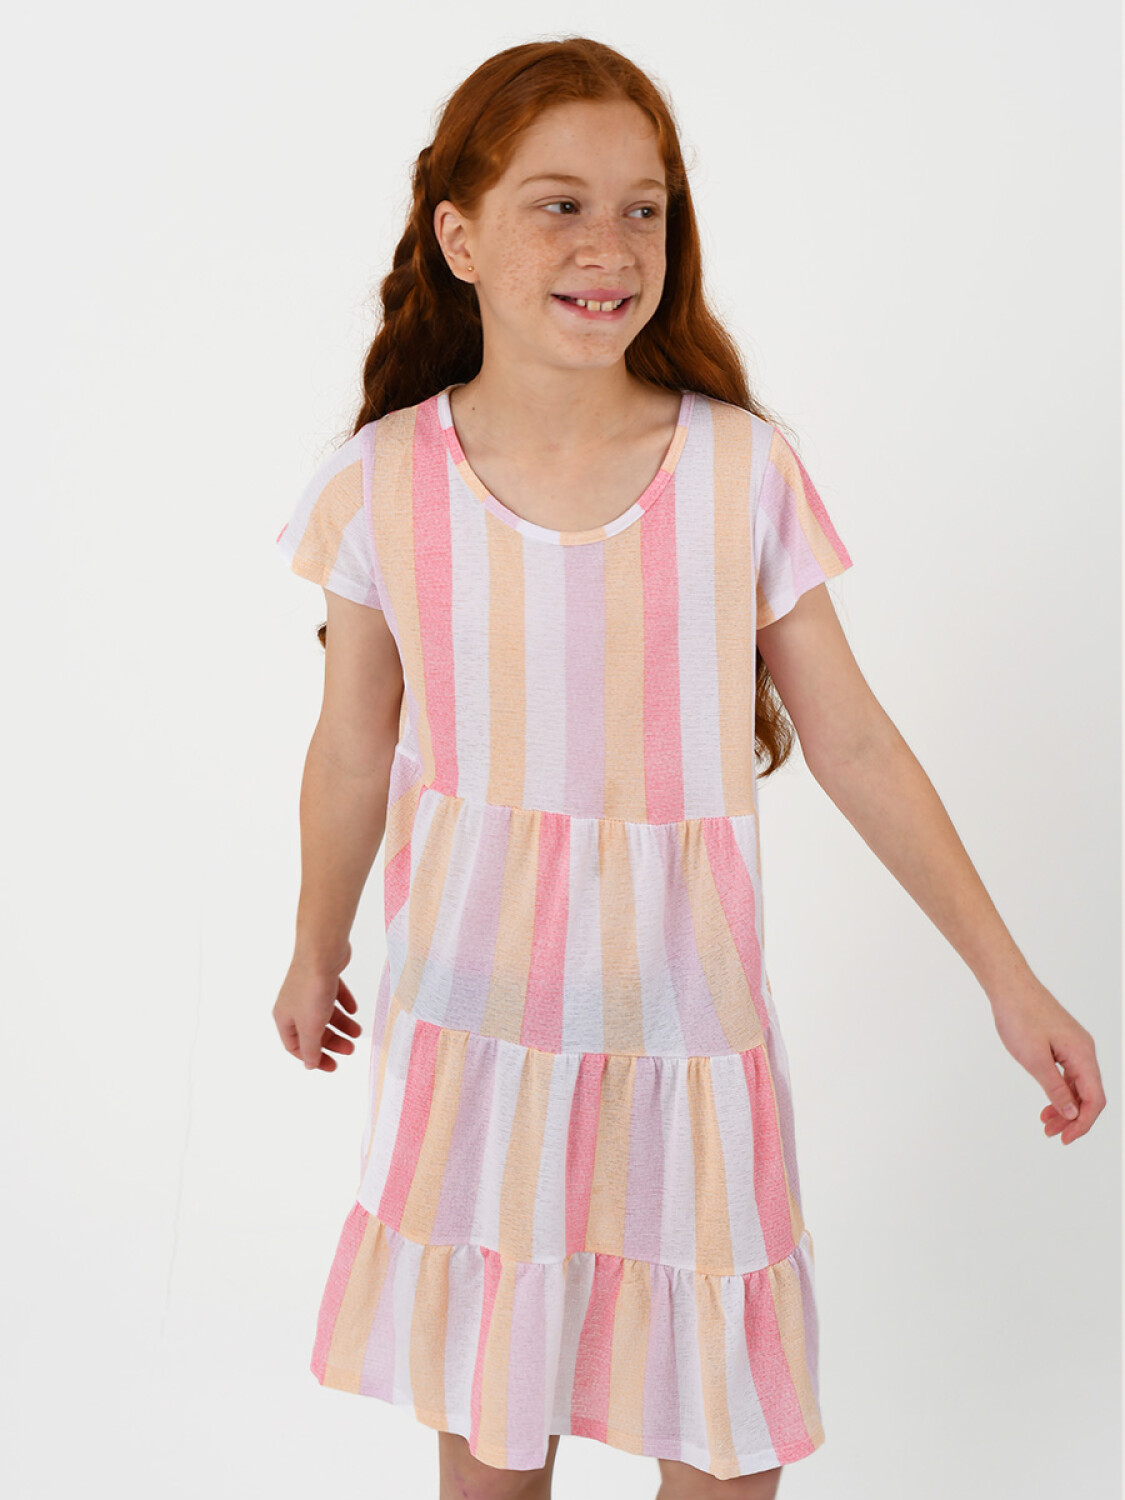 Riñonera niña multicolor - Tienda online de ropa infantil